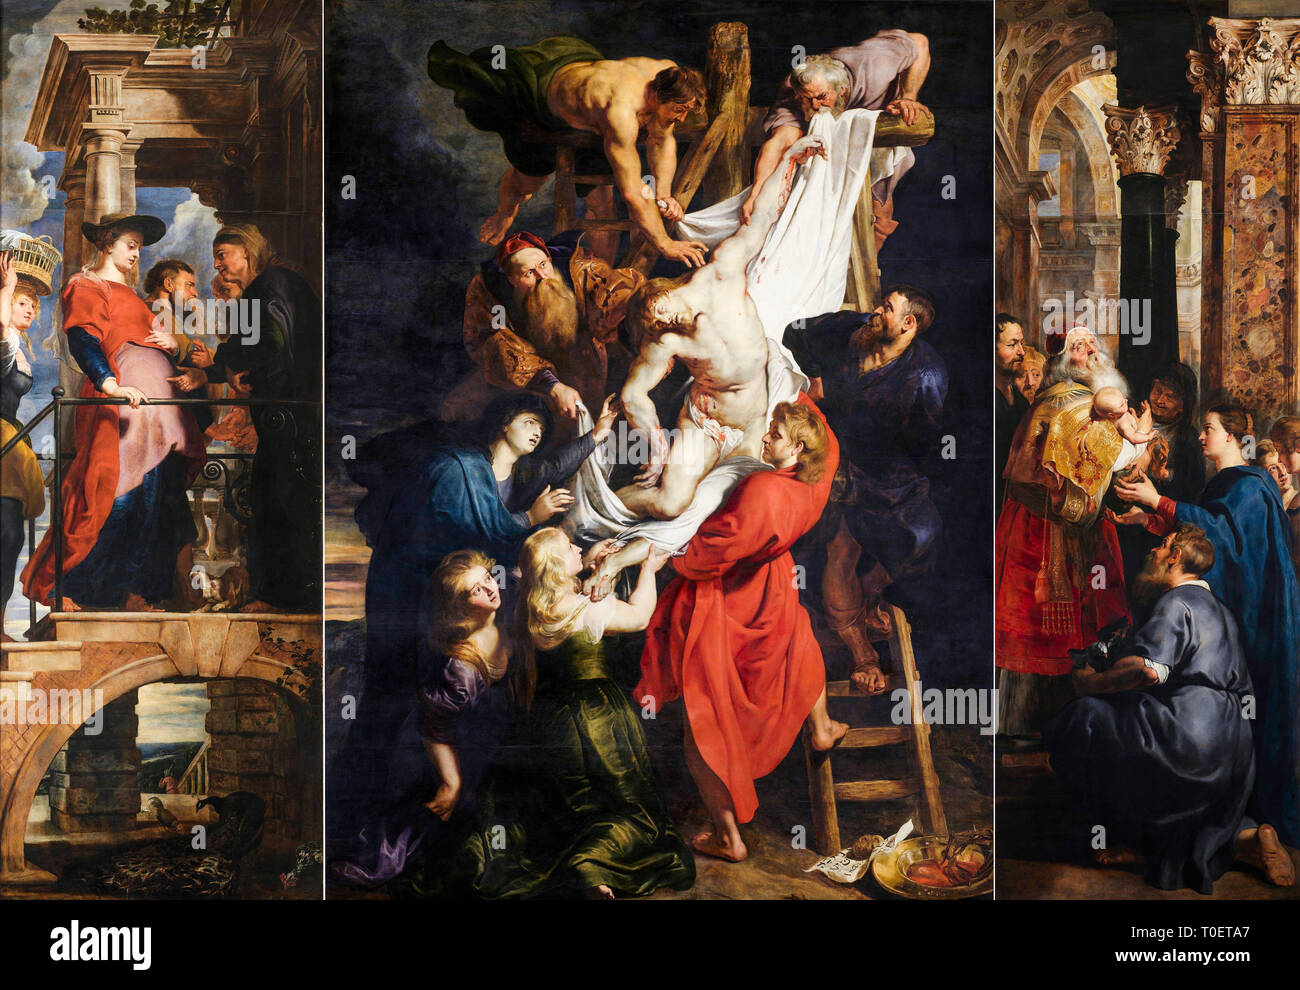 Peter Paul Rubens, El Descendimiento de la cruz, tríptico, c. 1612 Foto de stock